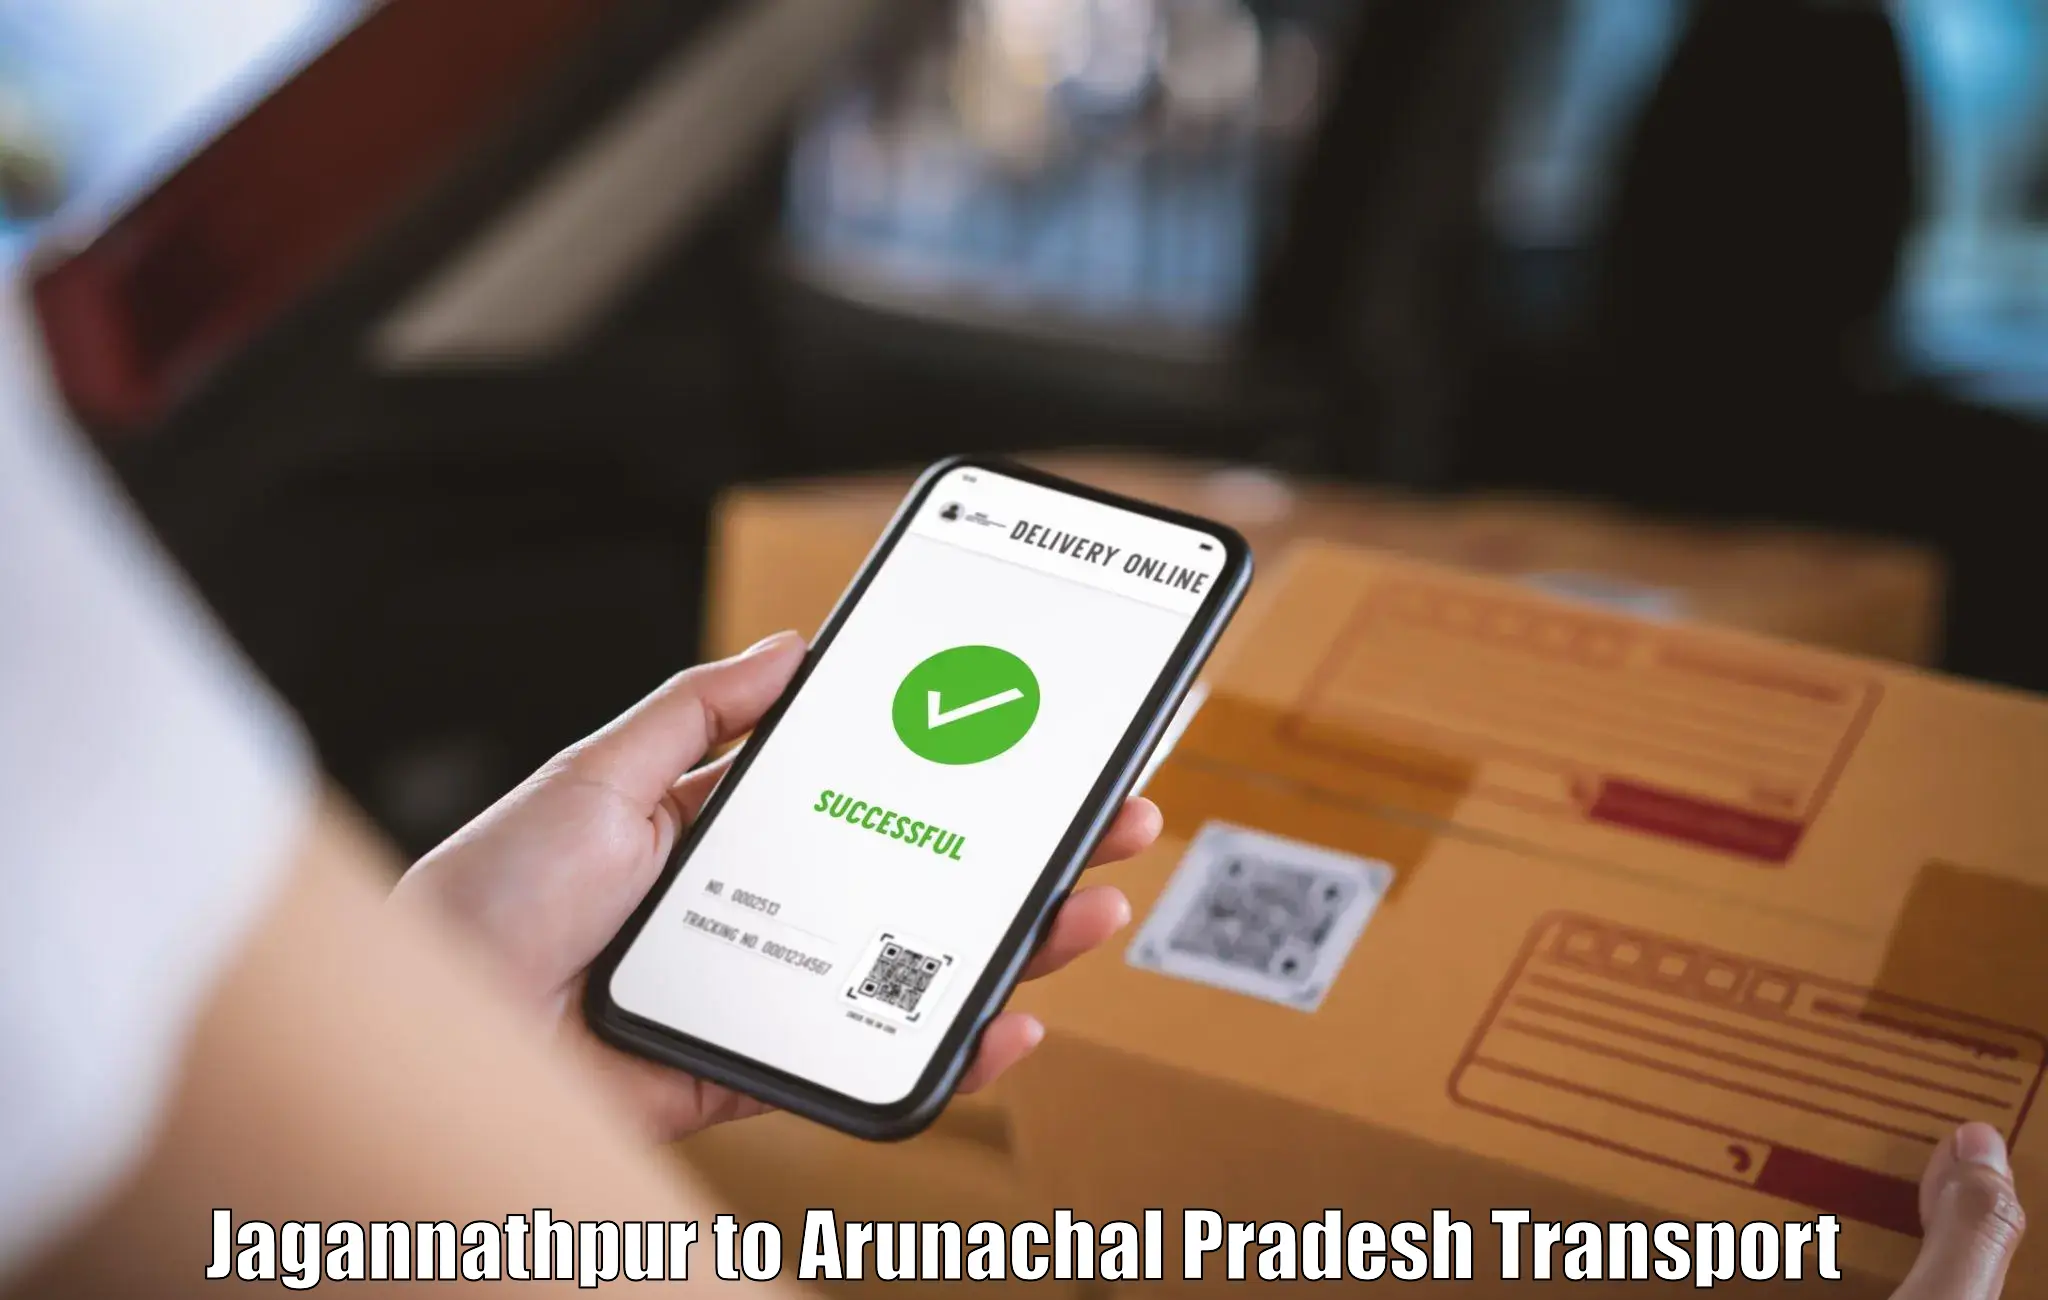 Container transportation services Jagannathpur to Arunachal Pradesh